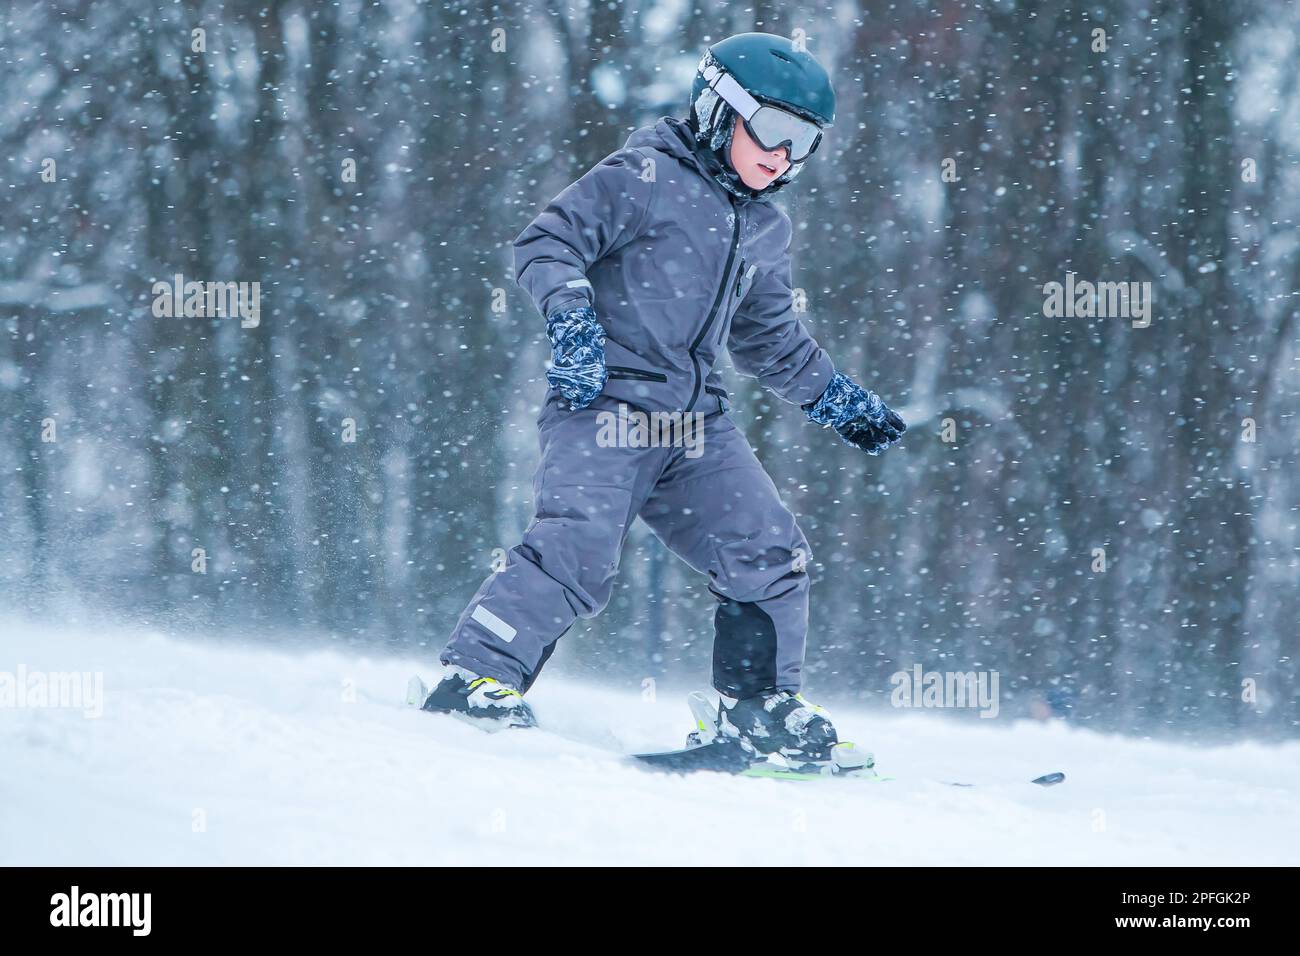 Petit skieur en descente avec des éclaboussures de neige. Ski enfant en montagne. Adolescent actif avec un casque de sécurité, des lunettes et des bâtons de ski Banque D'Images